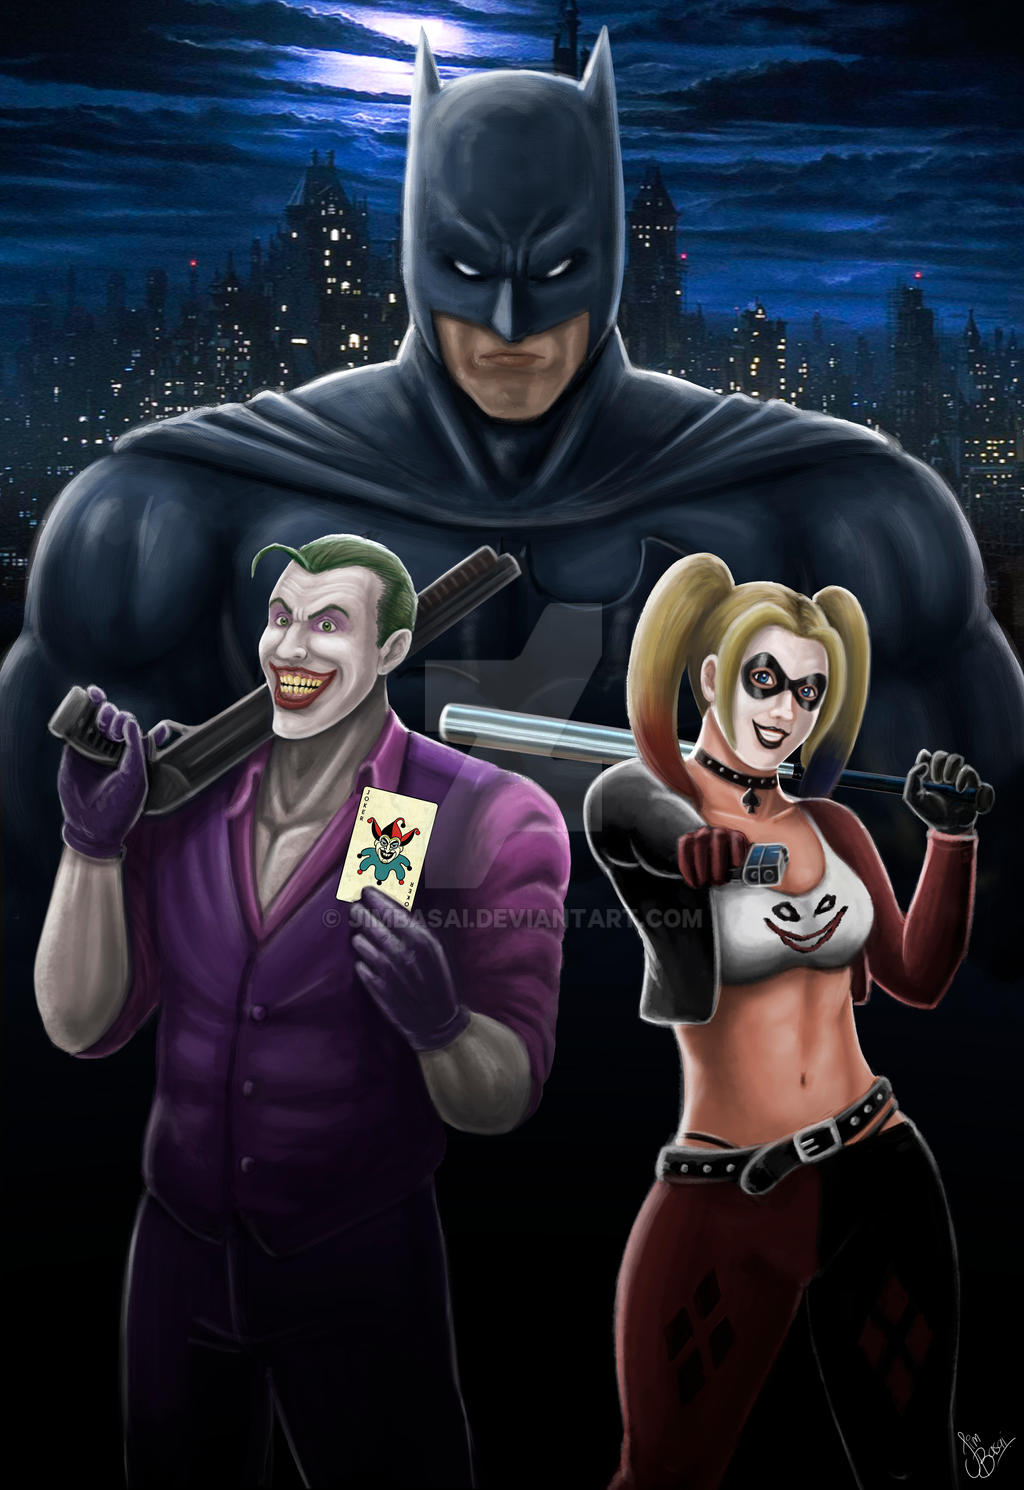 Batman, Joker and Harley Quinn (fan art) by JimBasai on DeviantArt